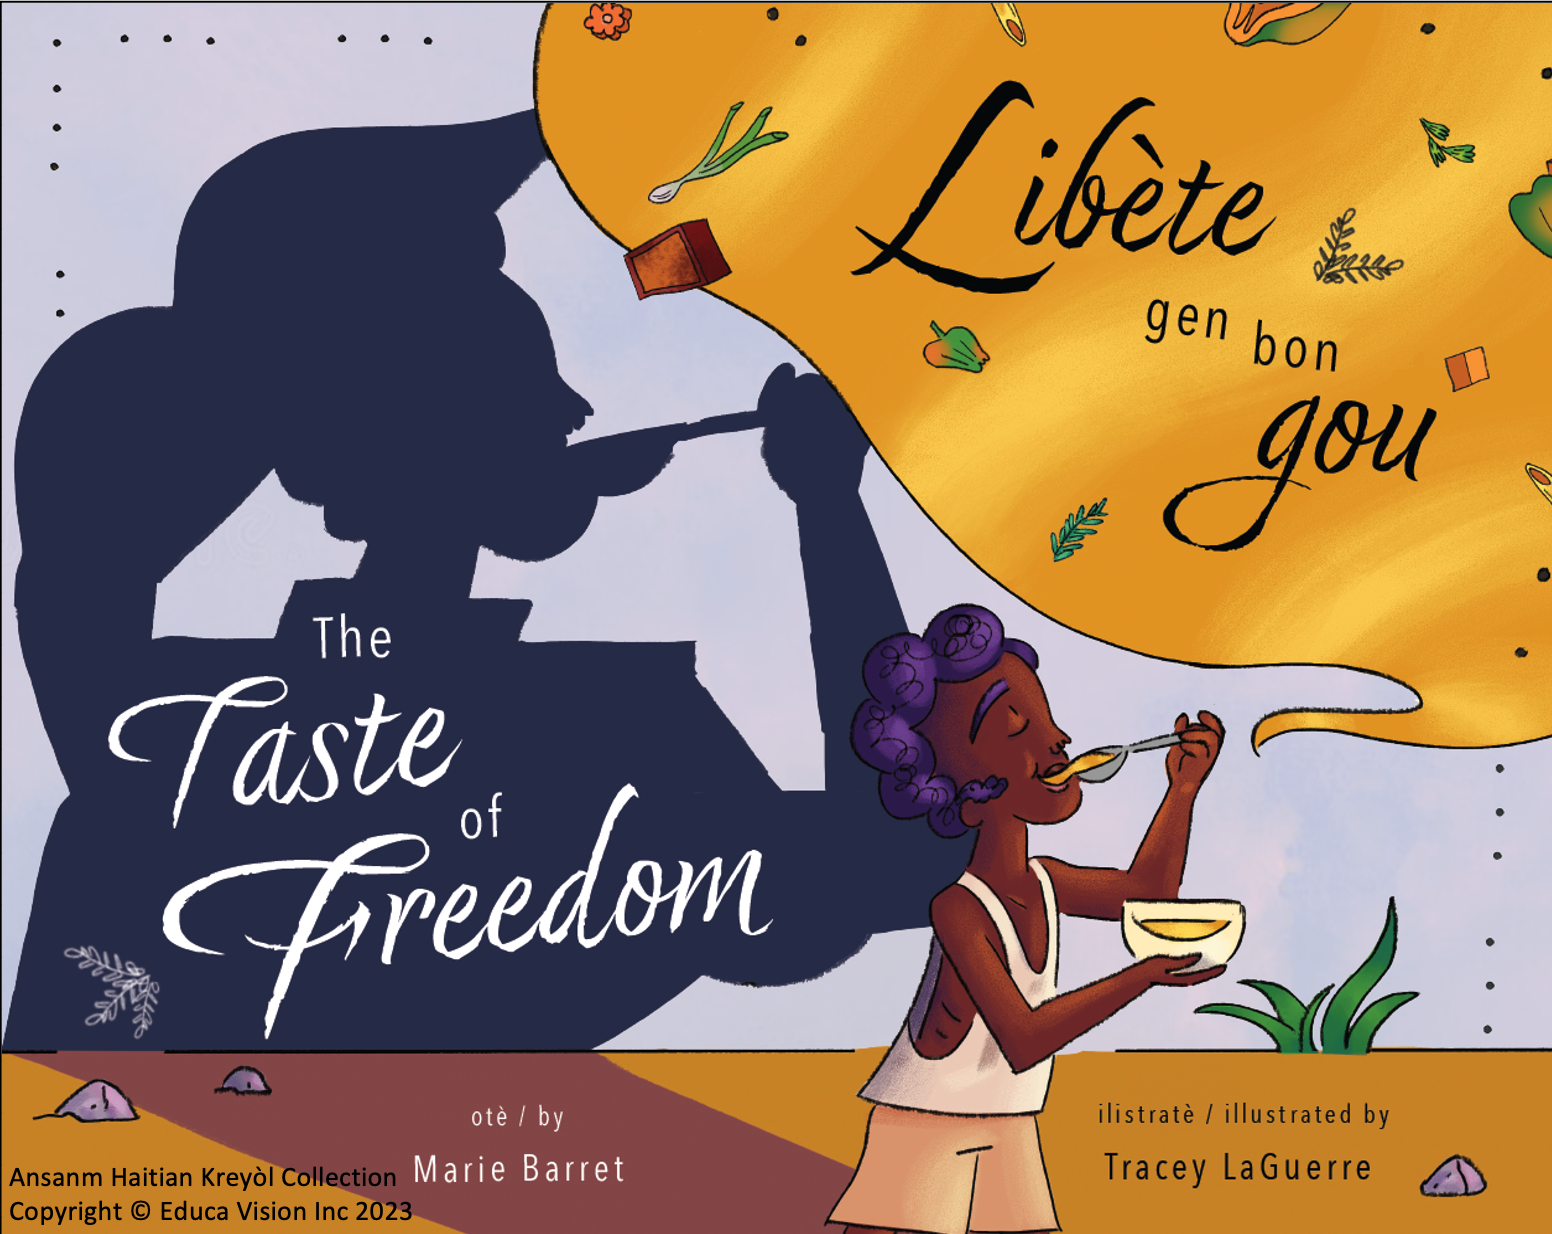 Libète gen bon gou / The taste of freedom